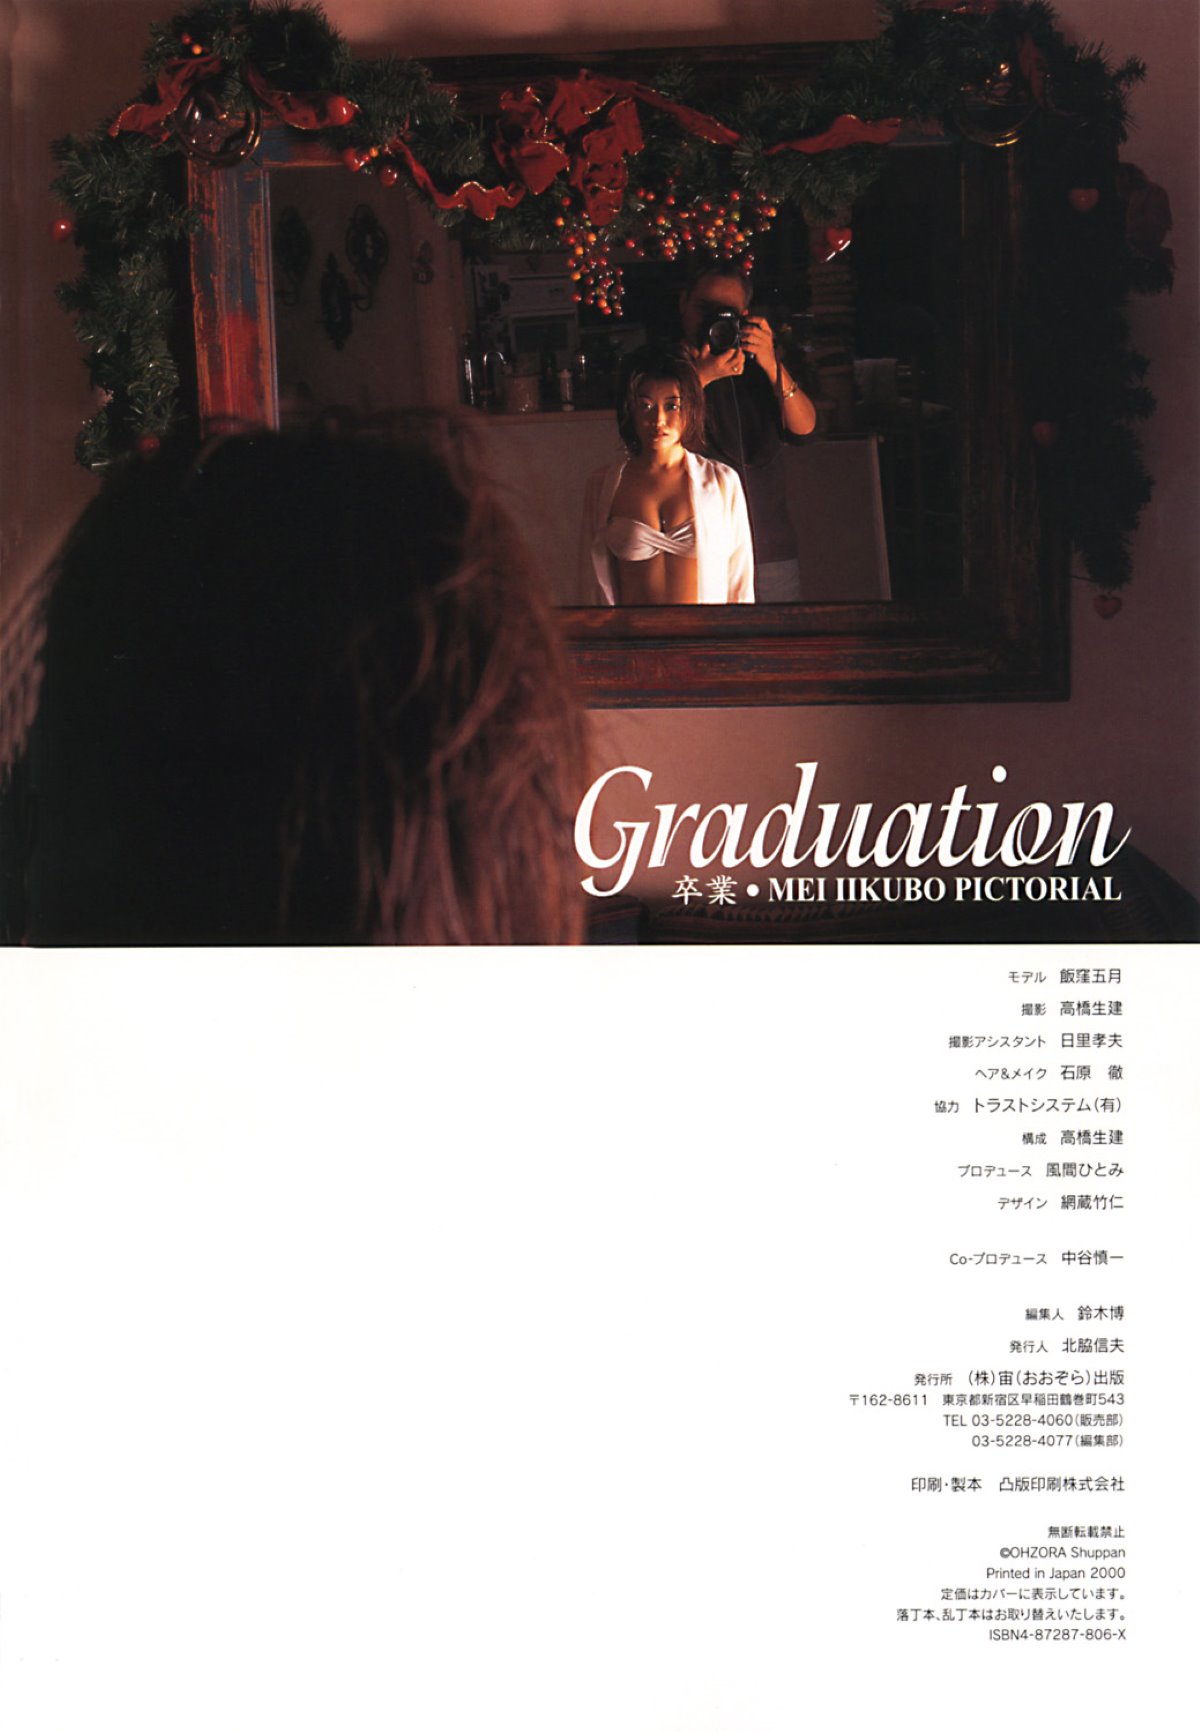 Photobook Mei Iikubo 飯窪五月 Graduation 0073 4529567939.jpg